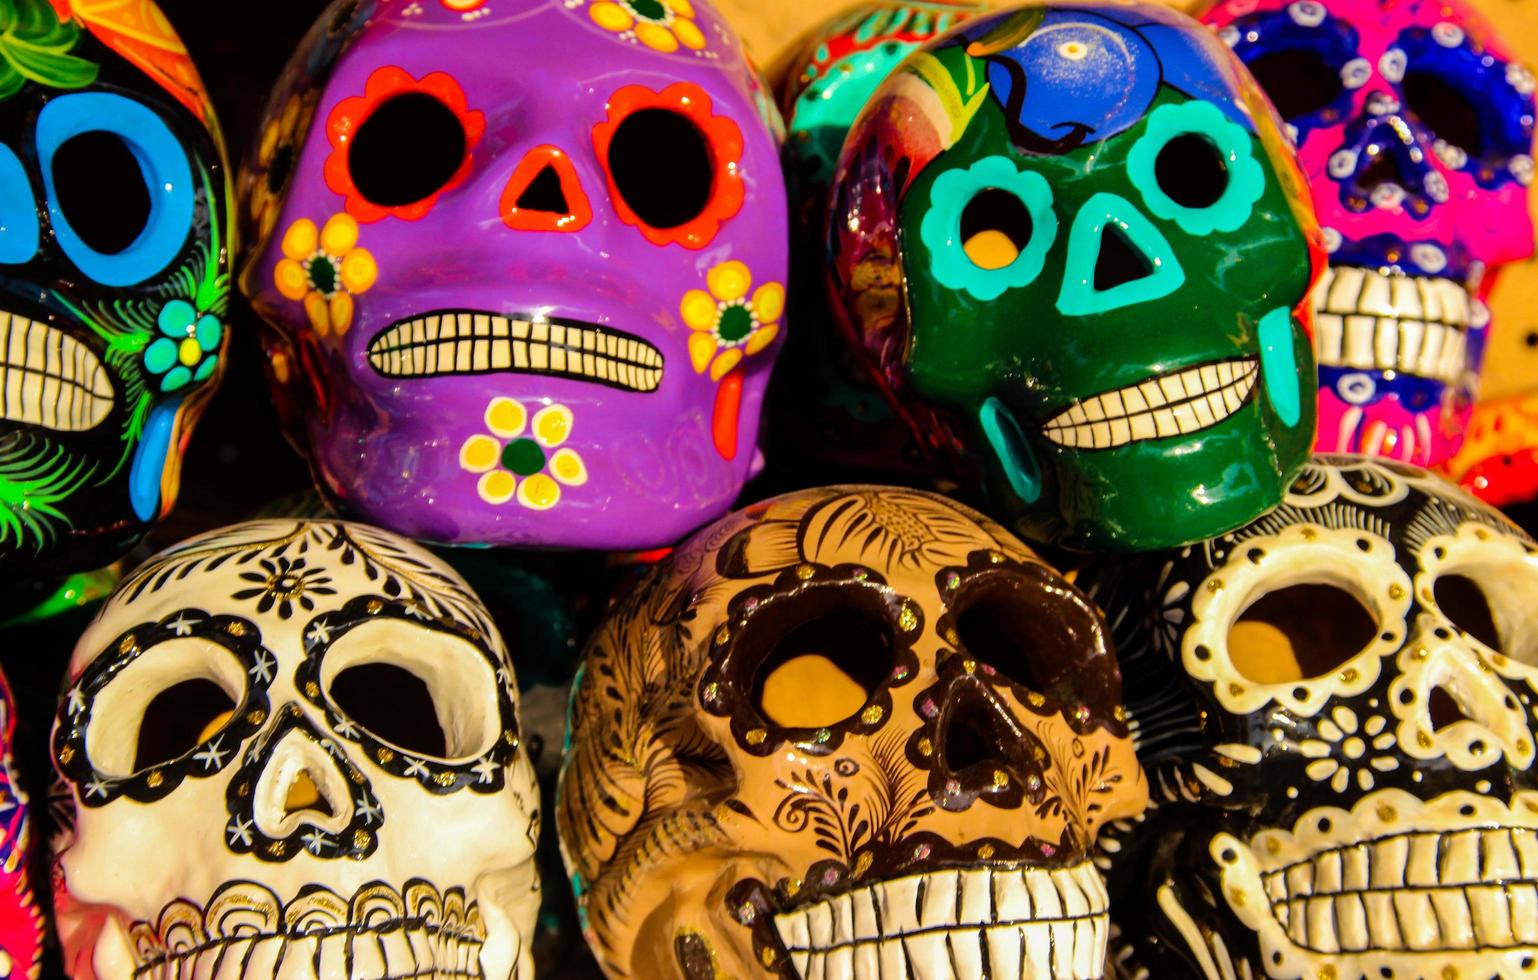 cabo san lucas, méxico, 8 de agosto de 2014 - calacas, cráneo de madera máscaras del día de los muertos en el mercado de cabo san lucas, méxico. las máscaras son símbolos típicos que representan calacas, esqueletos. foto